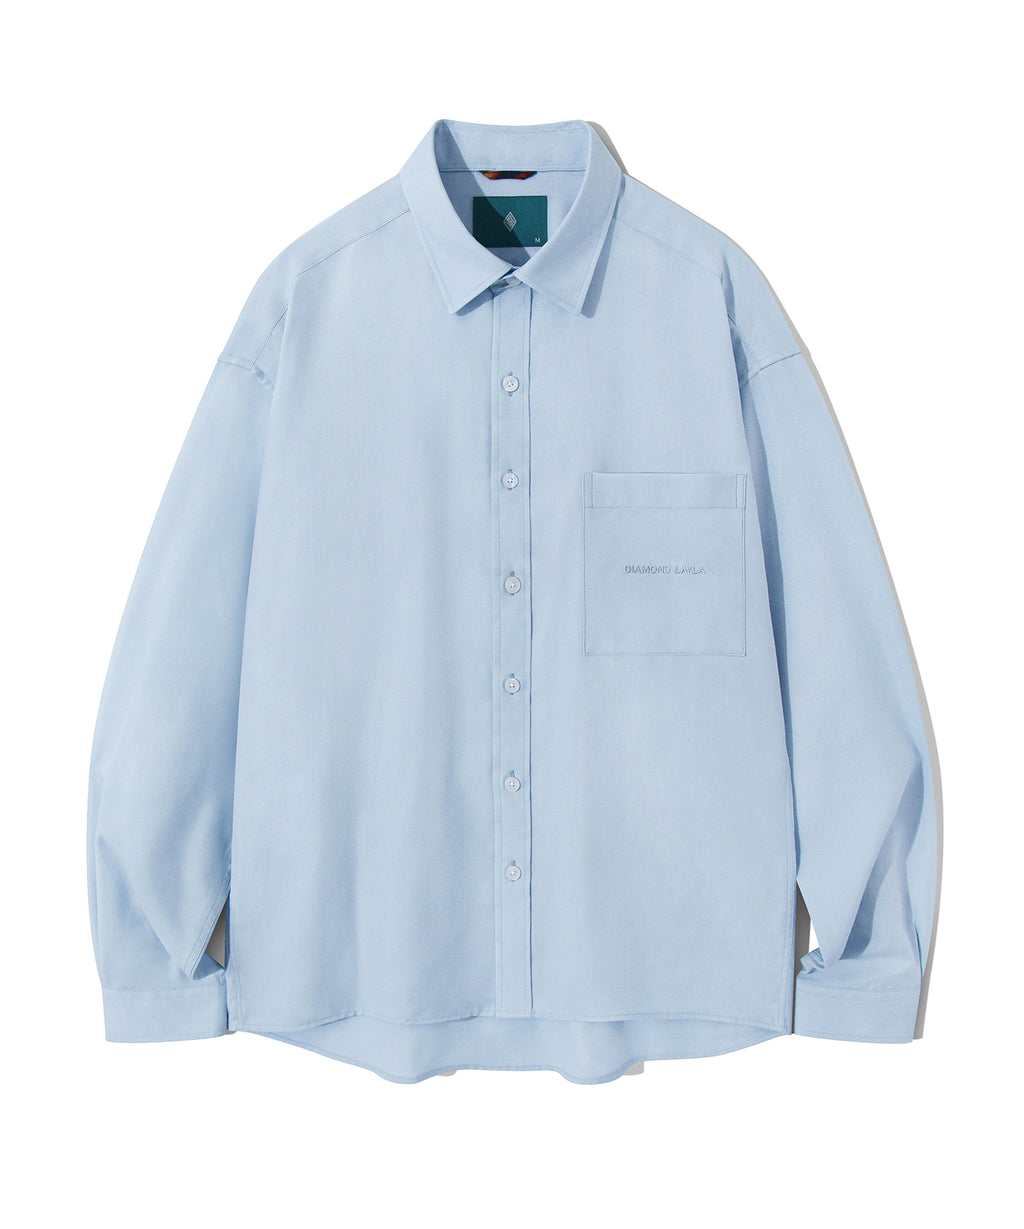 ライトO2シャツ/Light O2 Shirt S118 Sky Blue – 60% - SIXTYPERCENT